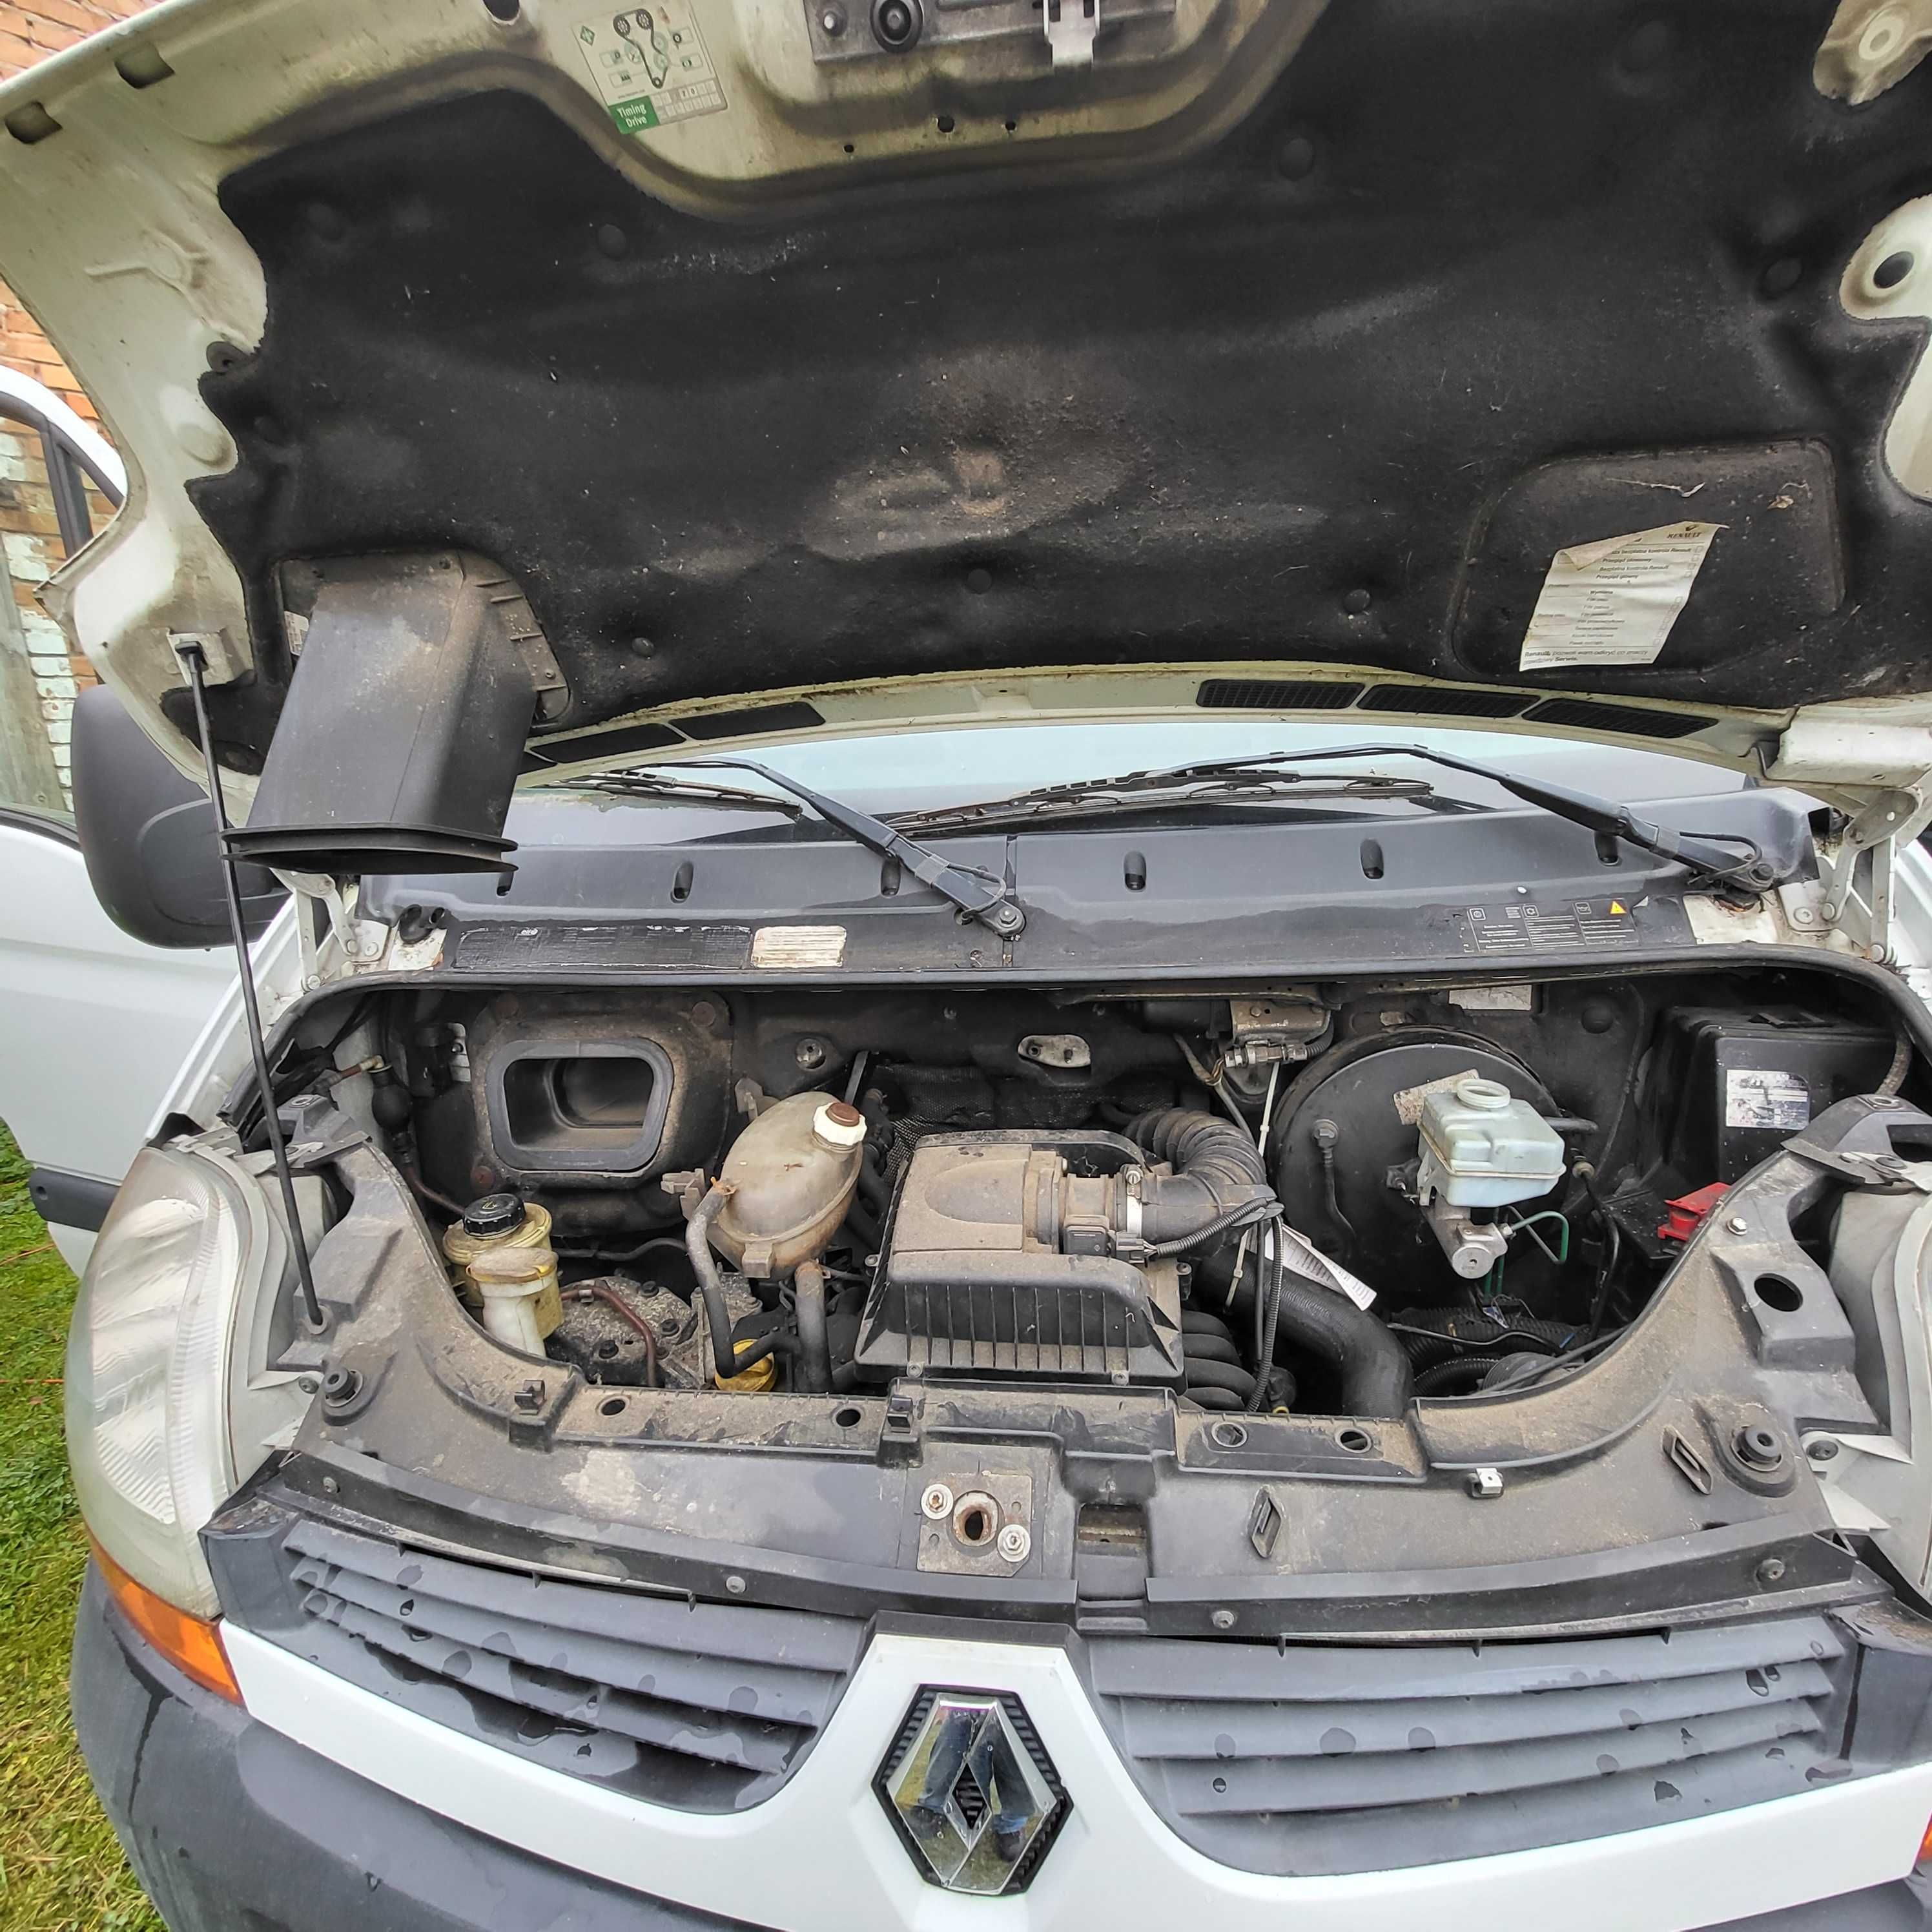 Renault Master 2,5DCI zabudowa warsztatowa na aucie, uszkodzony silnik